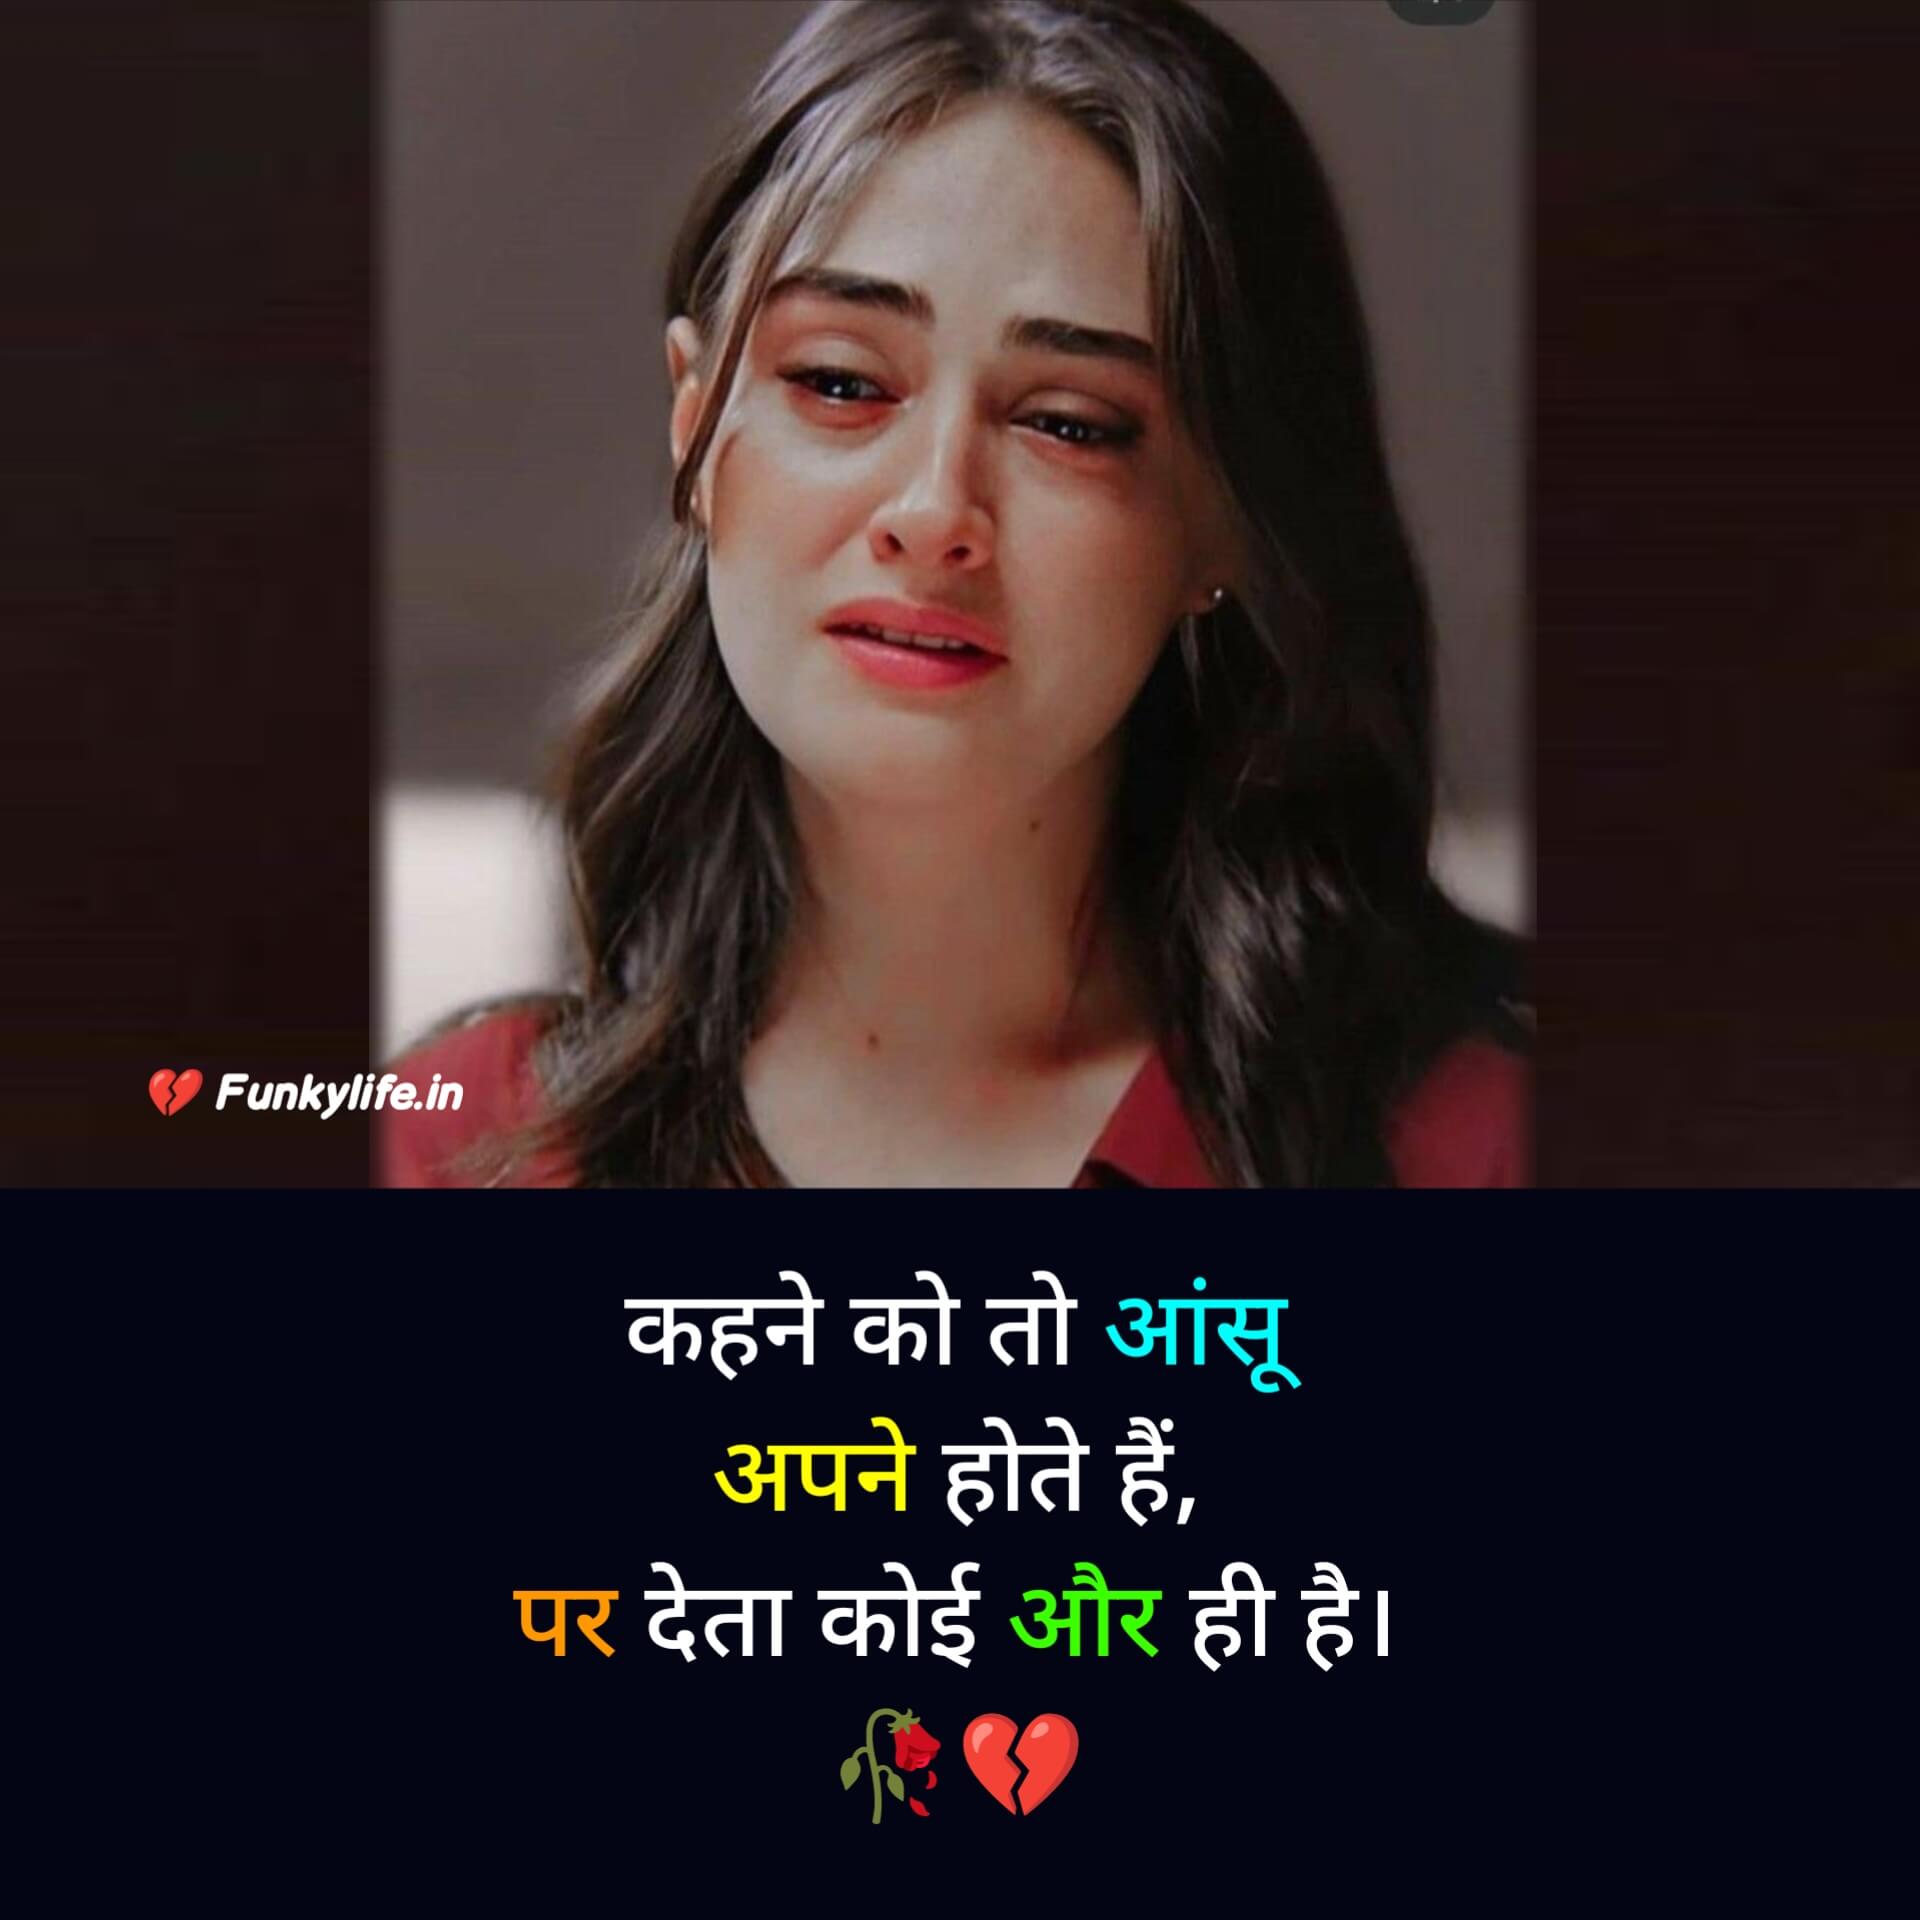 Sad Shayari in Hindi for Love